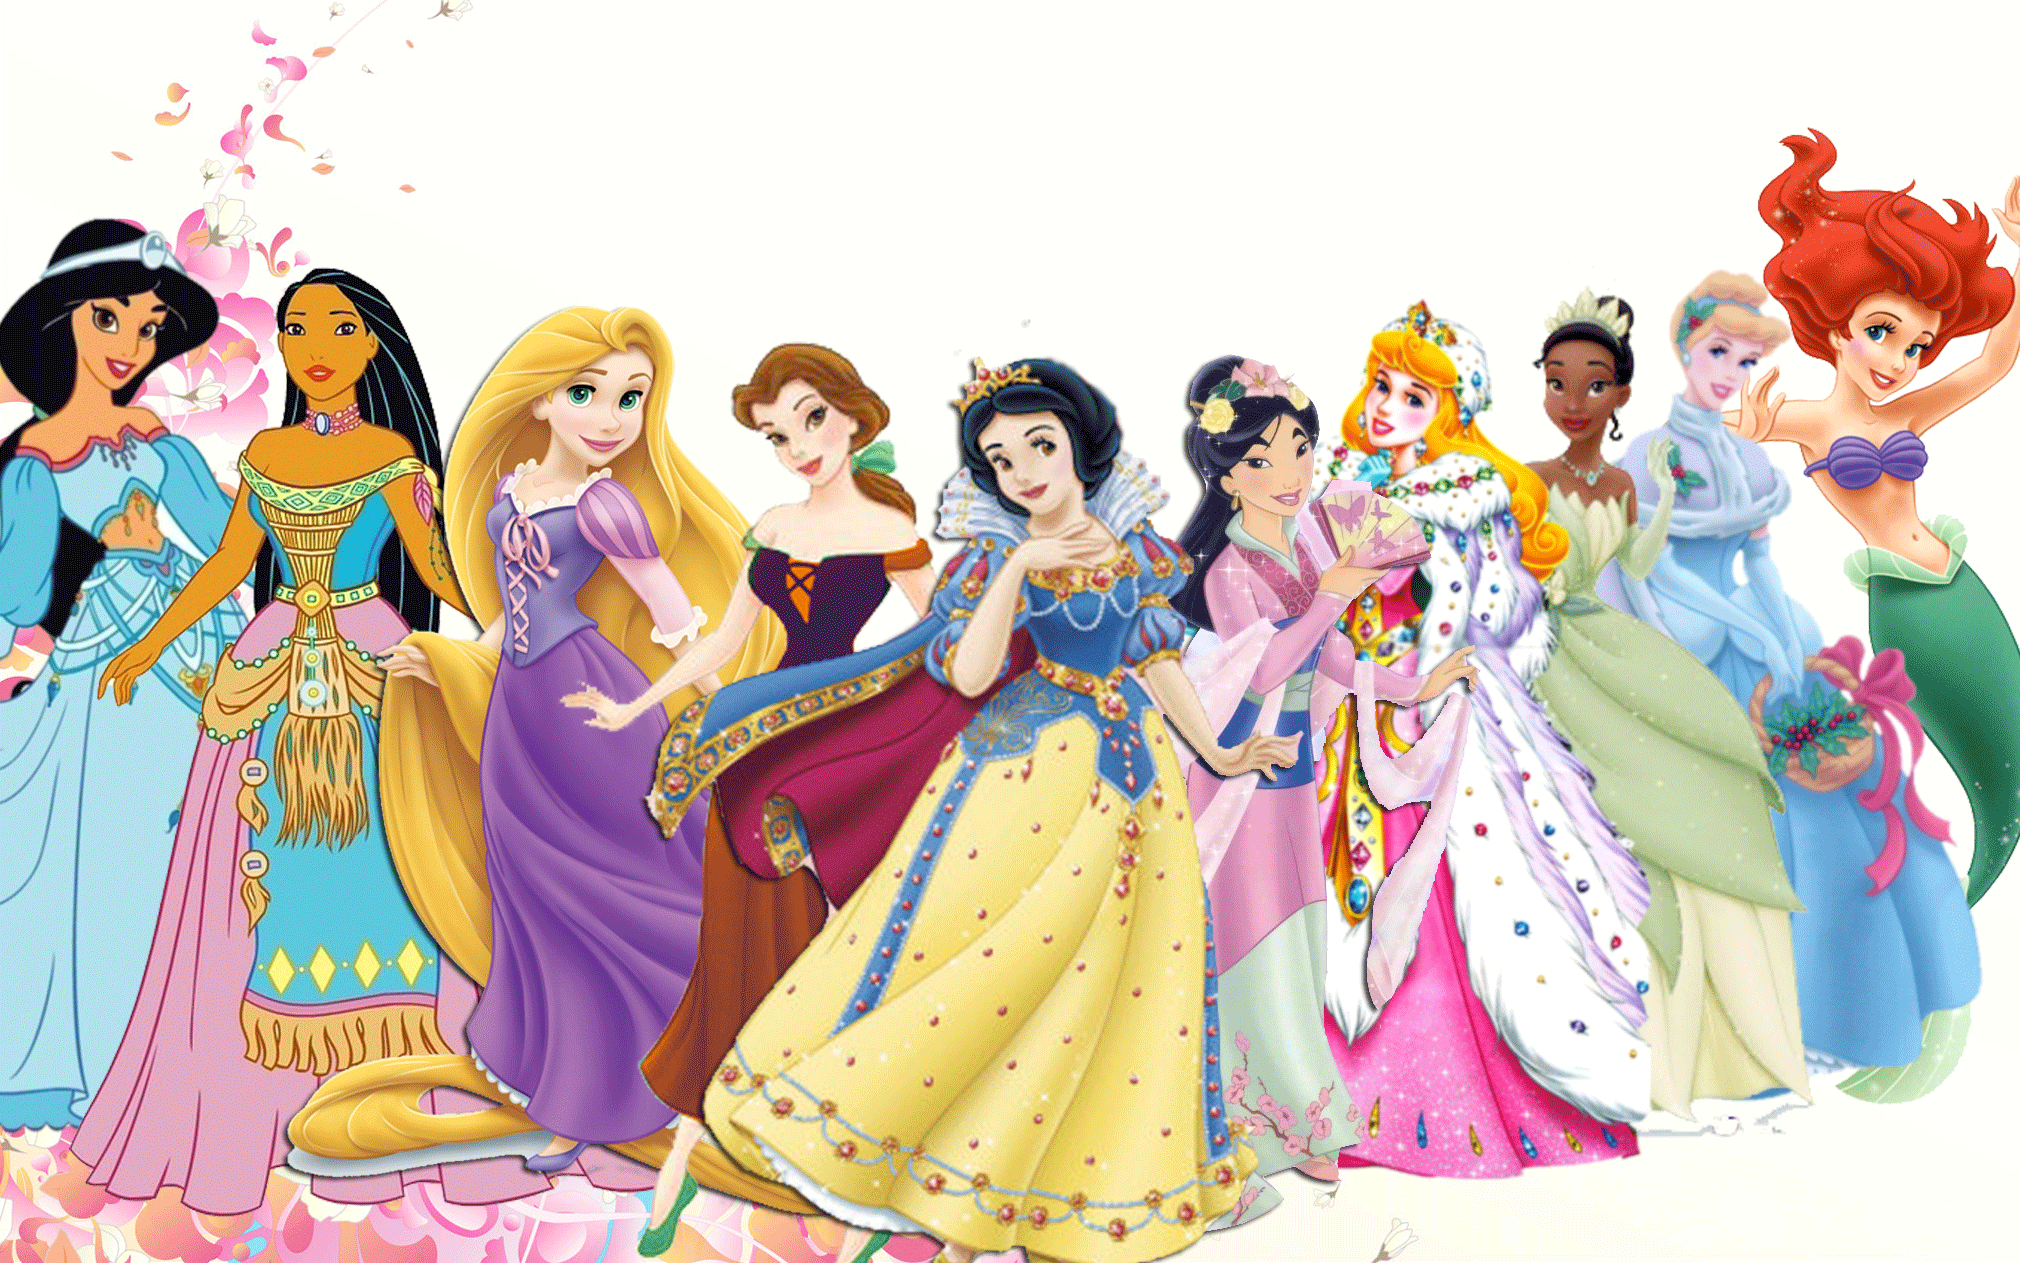 [78+] Disney Princesses Wallpaper on WallpaperSafari